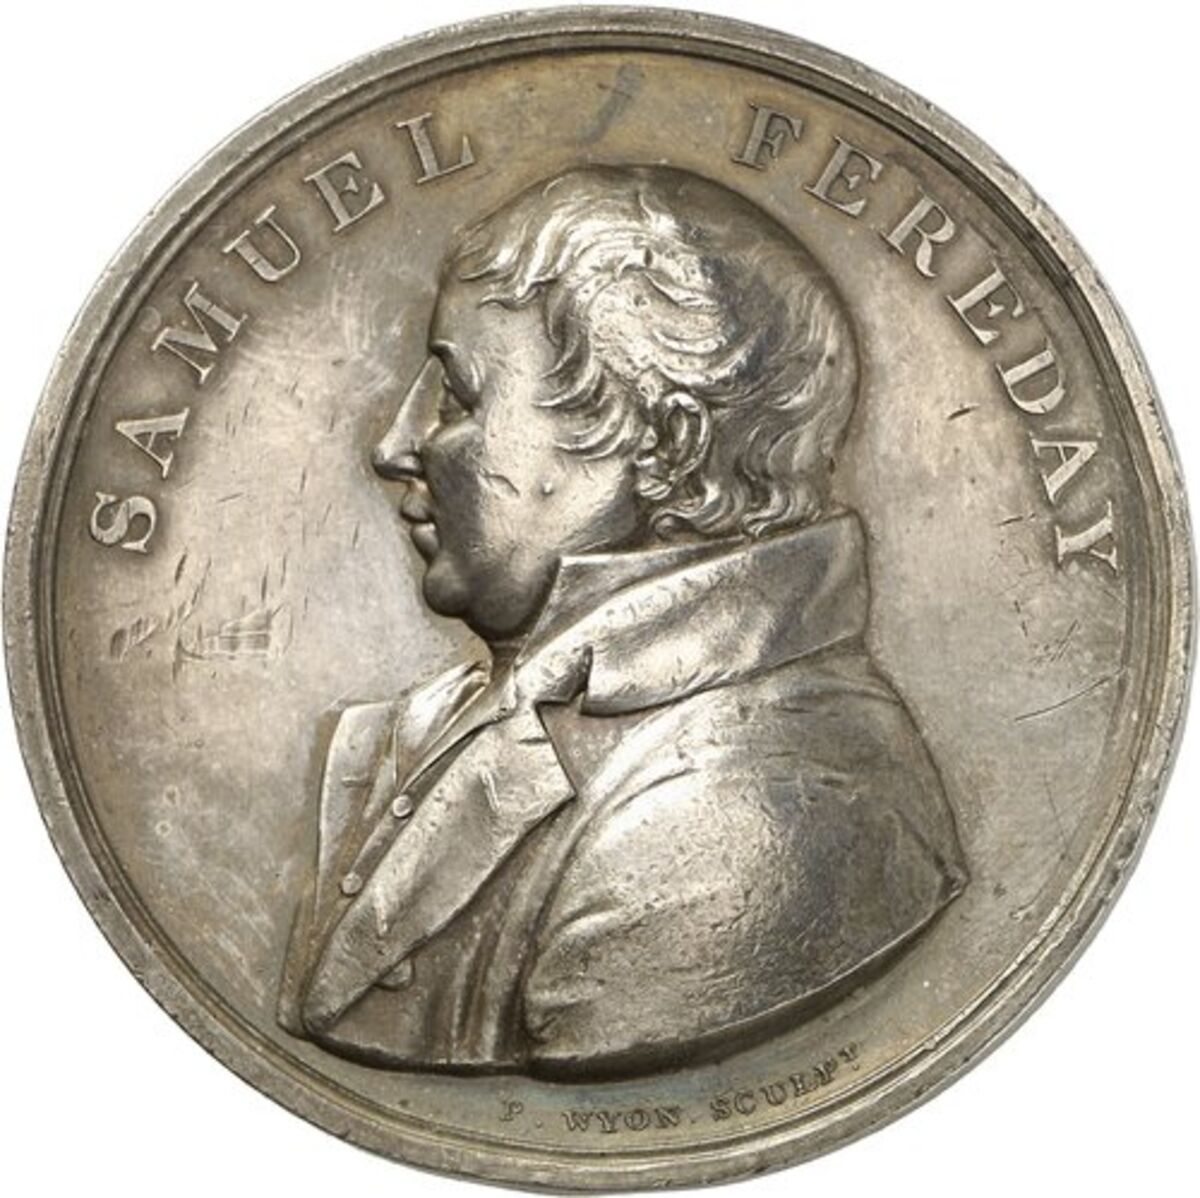 GFD 1/229: Münze mit Abbild von Samuel Fereday, geprägt von Peter Wyon, 1814